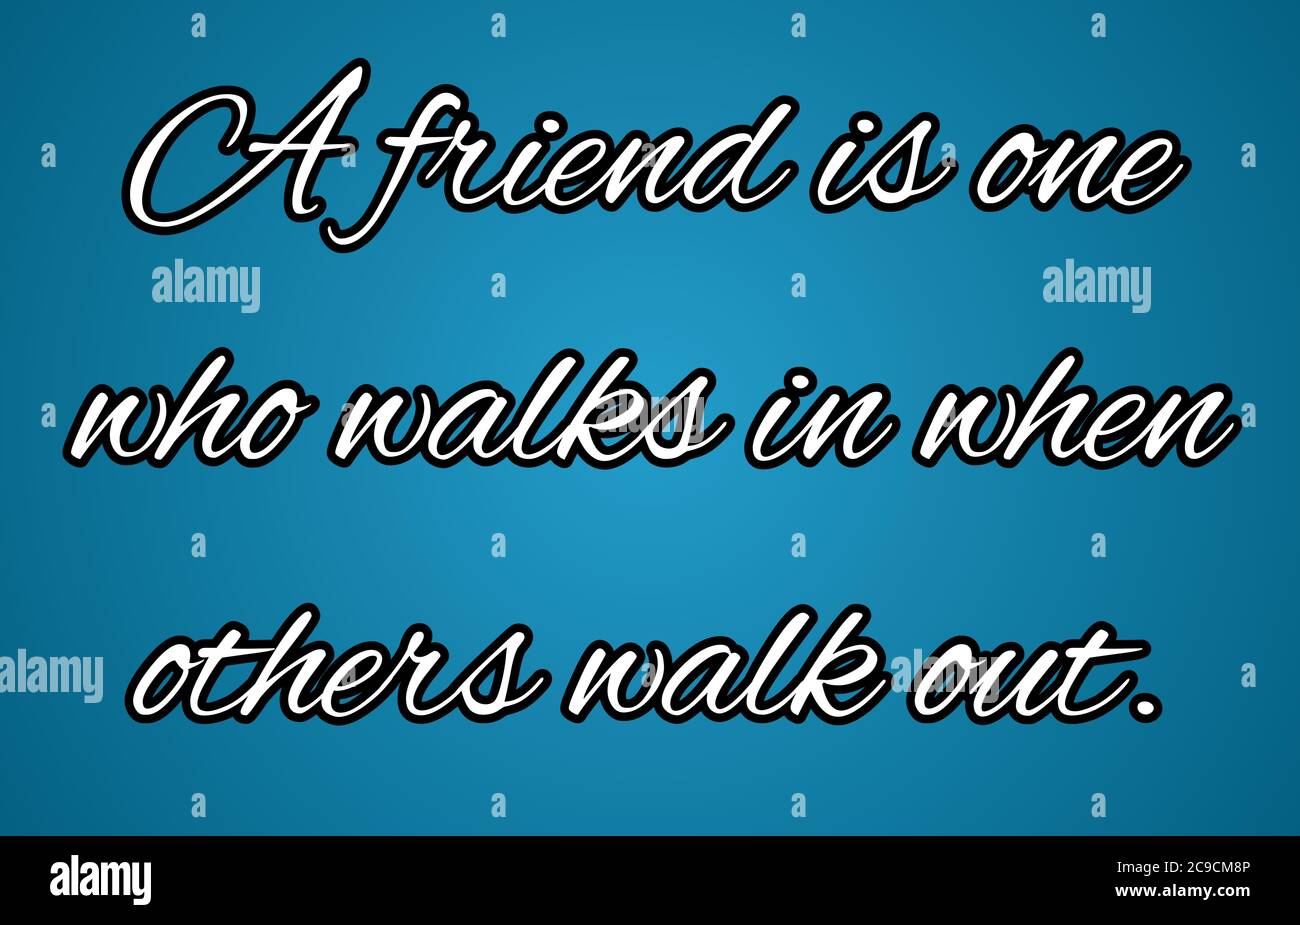 Friendship Day Zitat/Nachricht: 'Ein Freund ist einer, der hereinkommt, wenn andere rausgehen' Illustration. Freundschaft Tag Zitat Rendering. Stockfoto